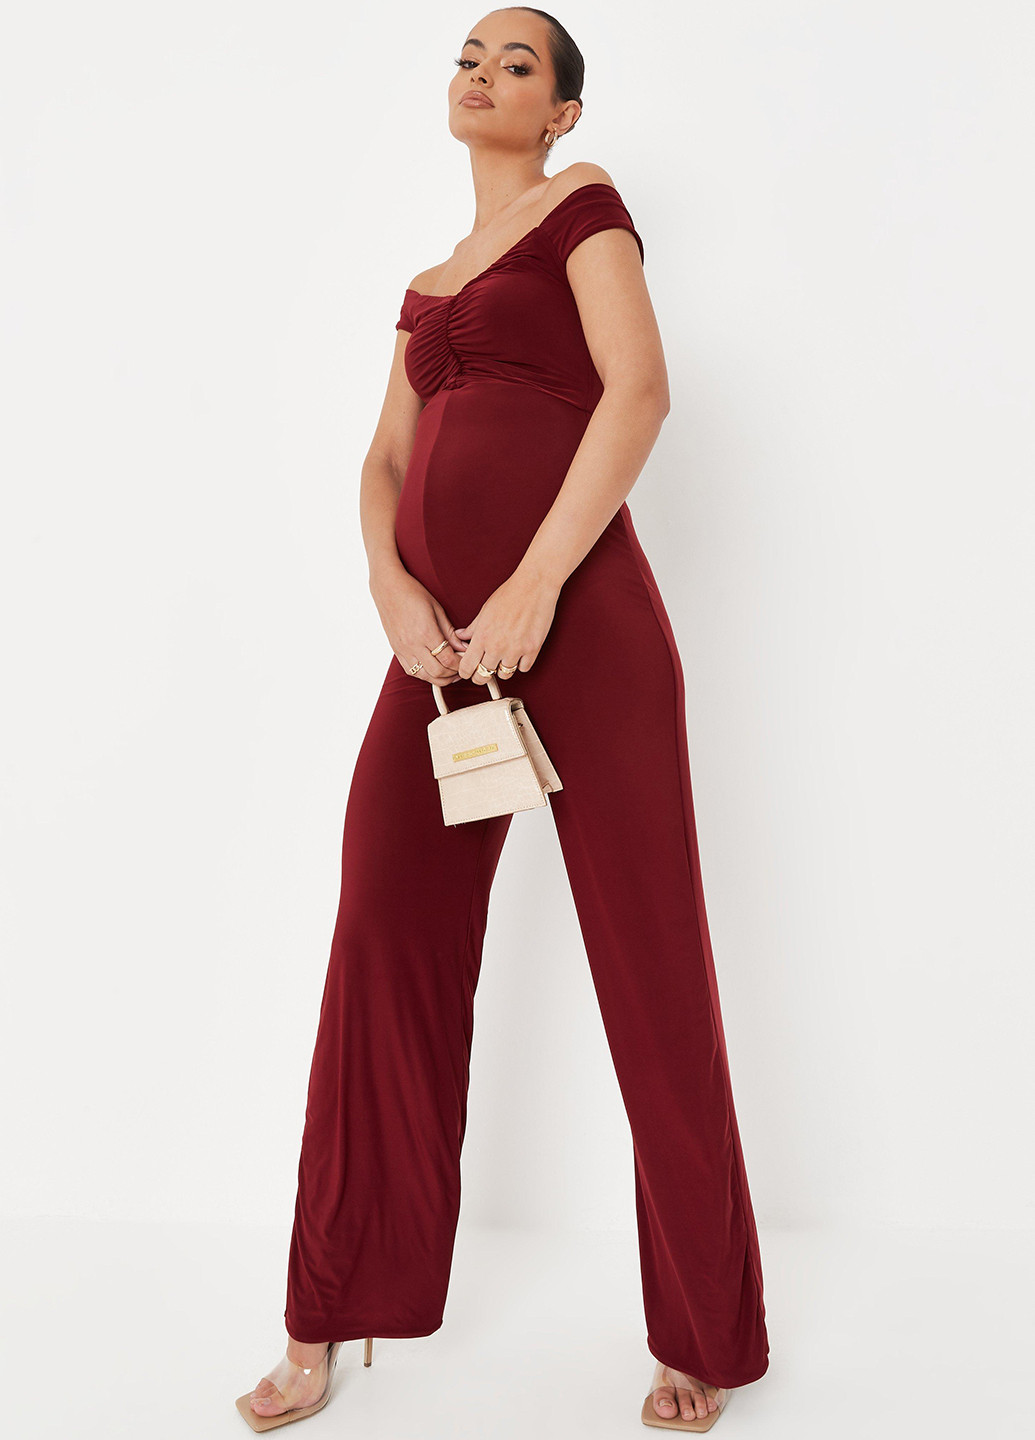 Комбинезон для беременных Missguided комбинезон-брюки однотонный бордовый кэжуал полиэстер